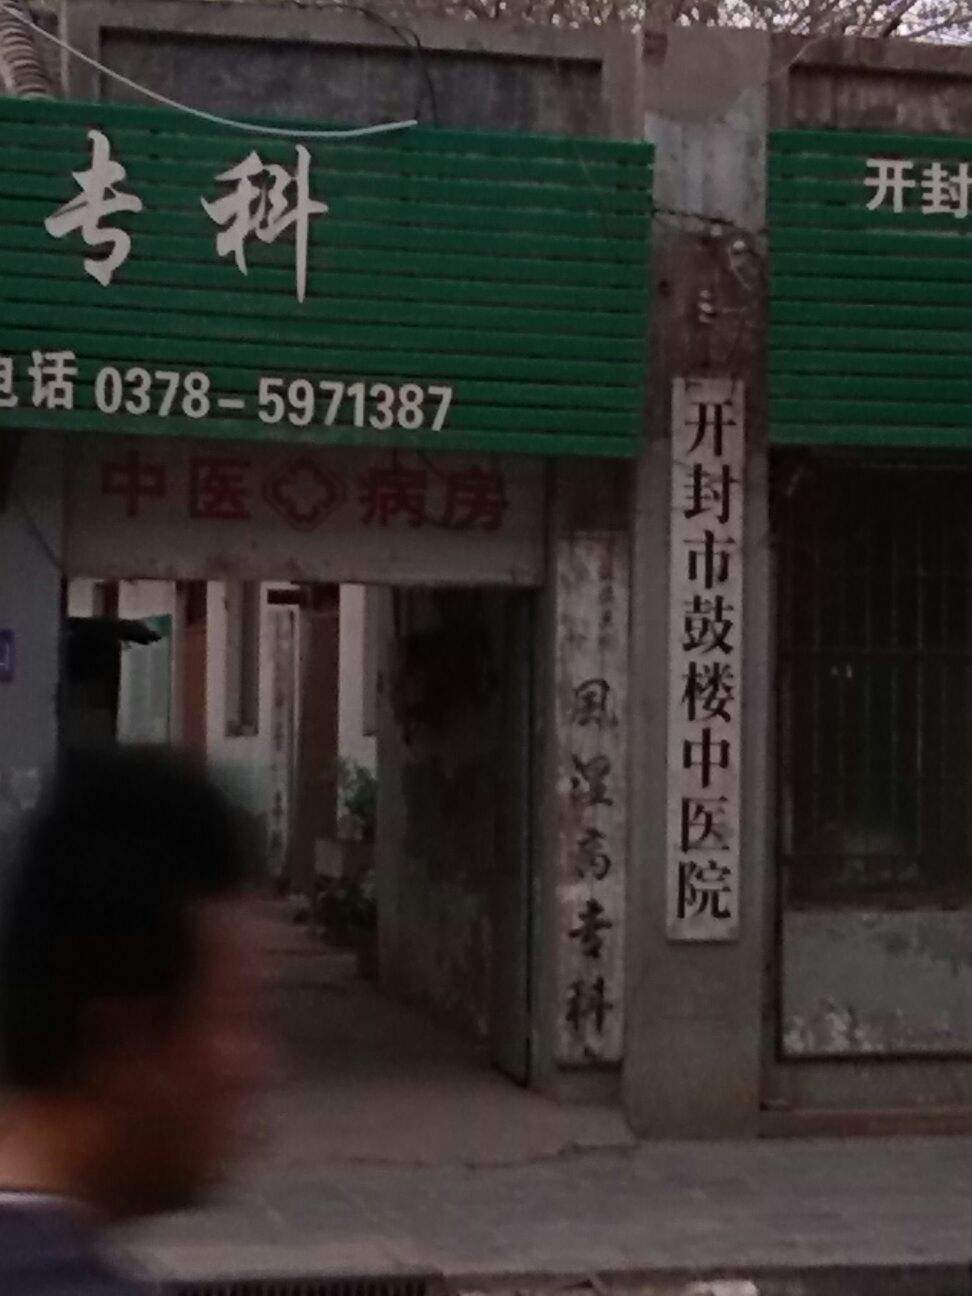 包含北京鼓楼中医院挂号号贩子联系方式第一时间安排联系方式信誉保证的词条